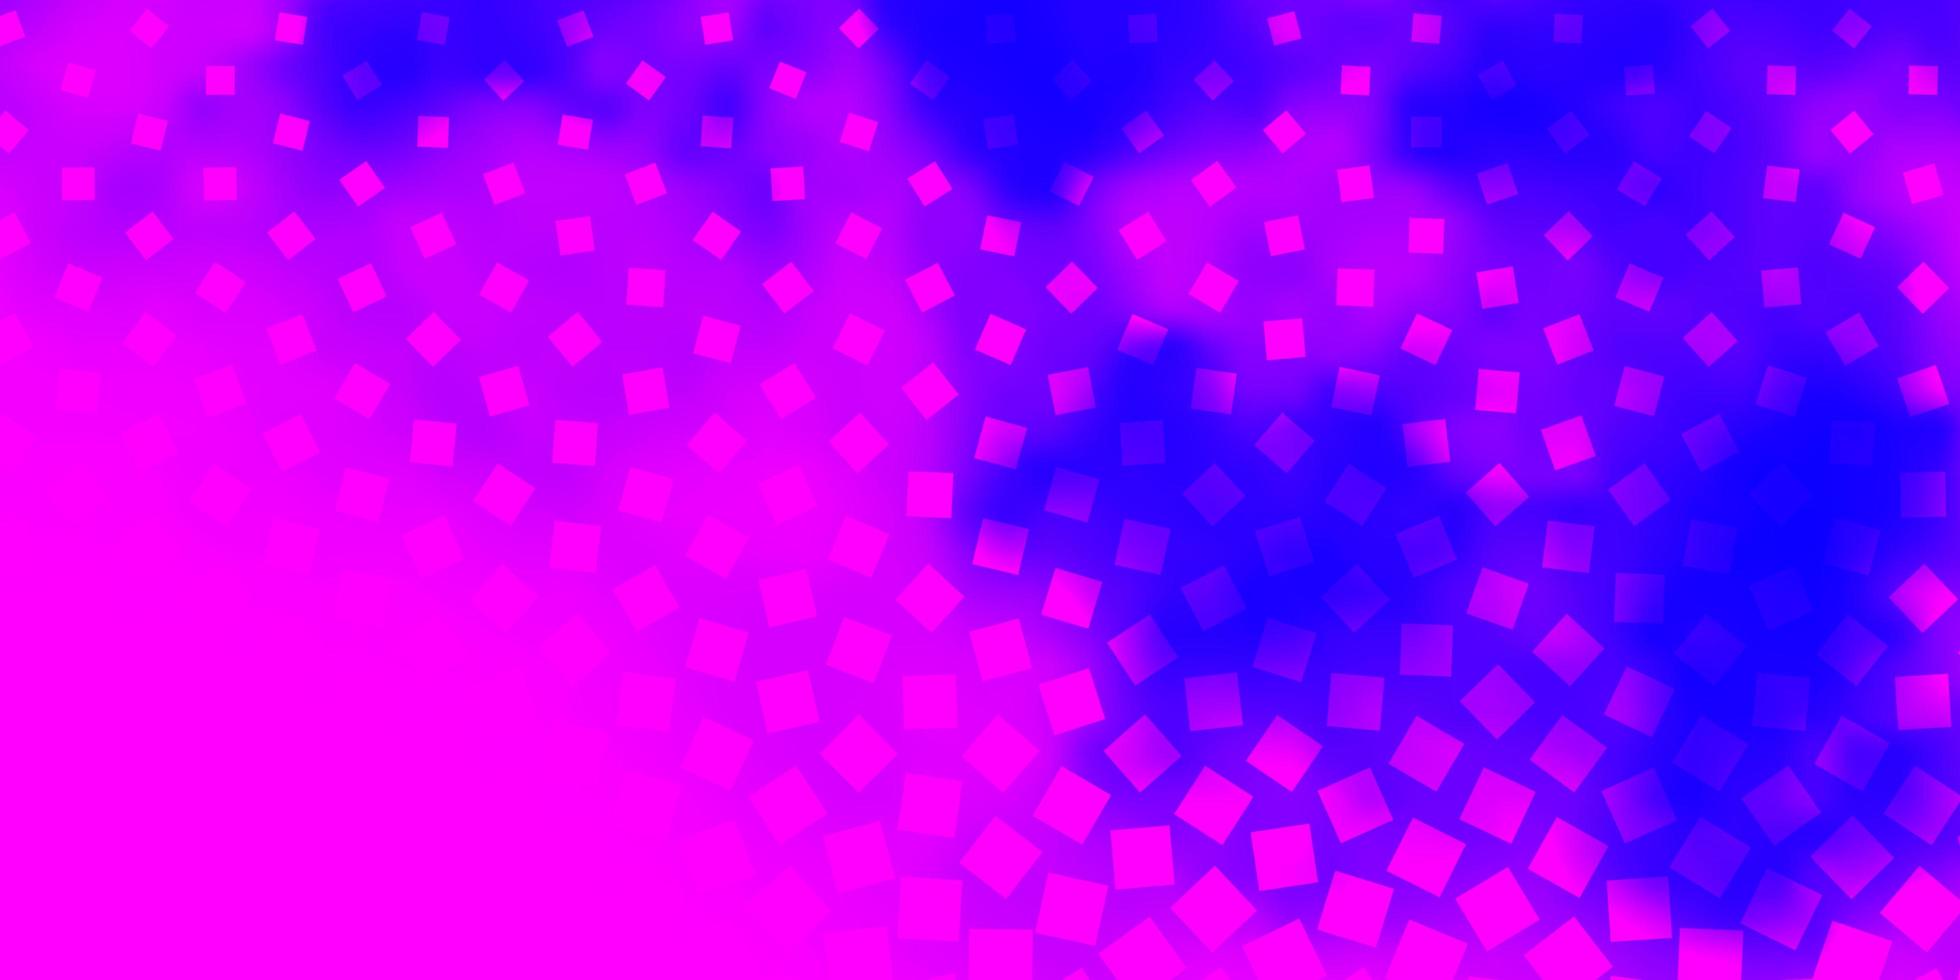 layout de vetor rosa roxo claro com linhas retângulos retângulos com gradiente colorido no padrão de fundo abstrato para anúncios comerciais